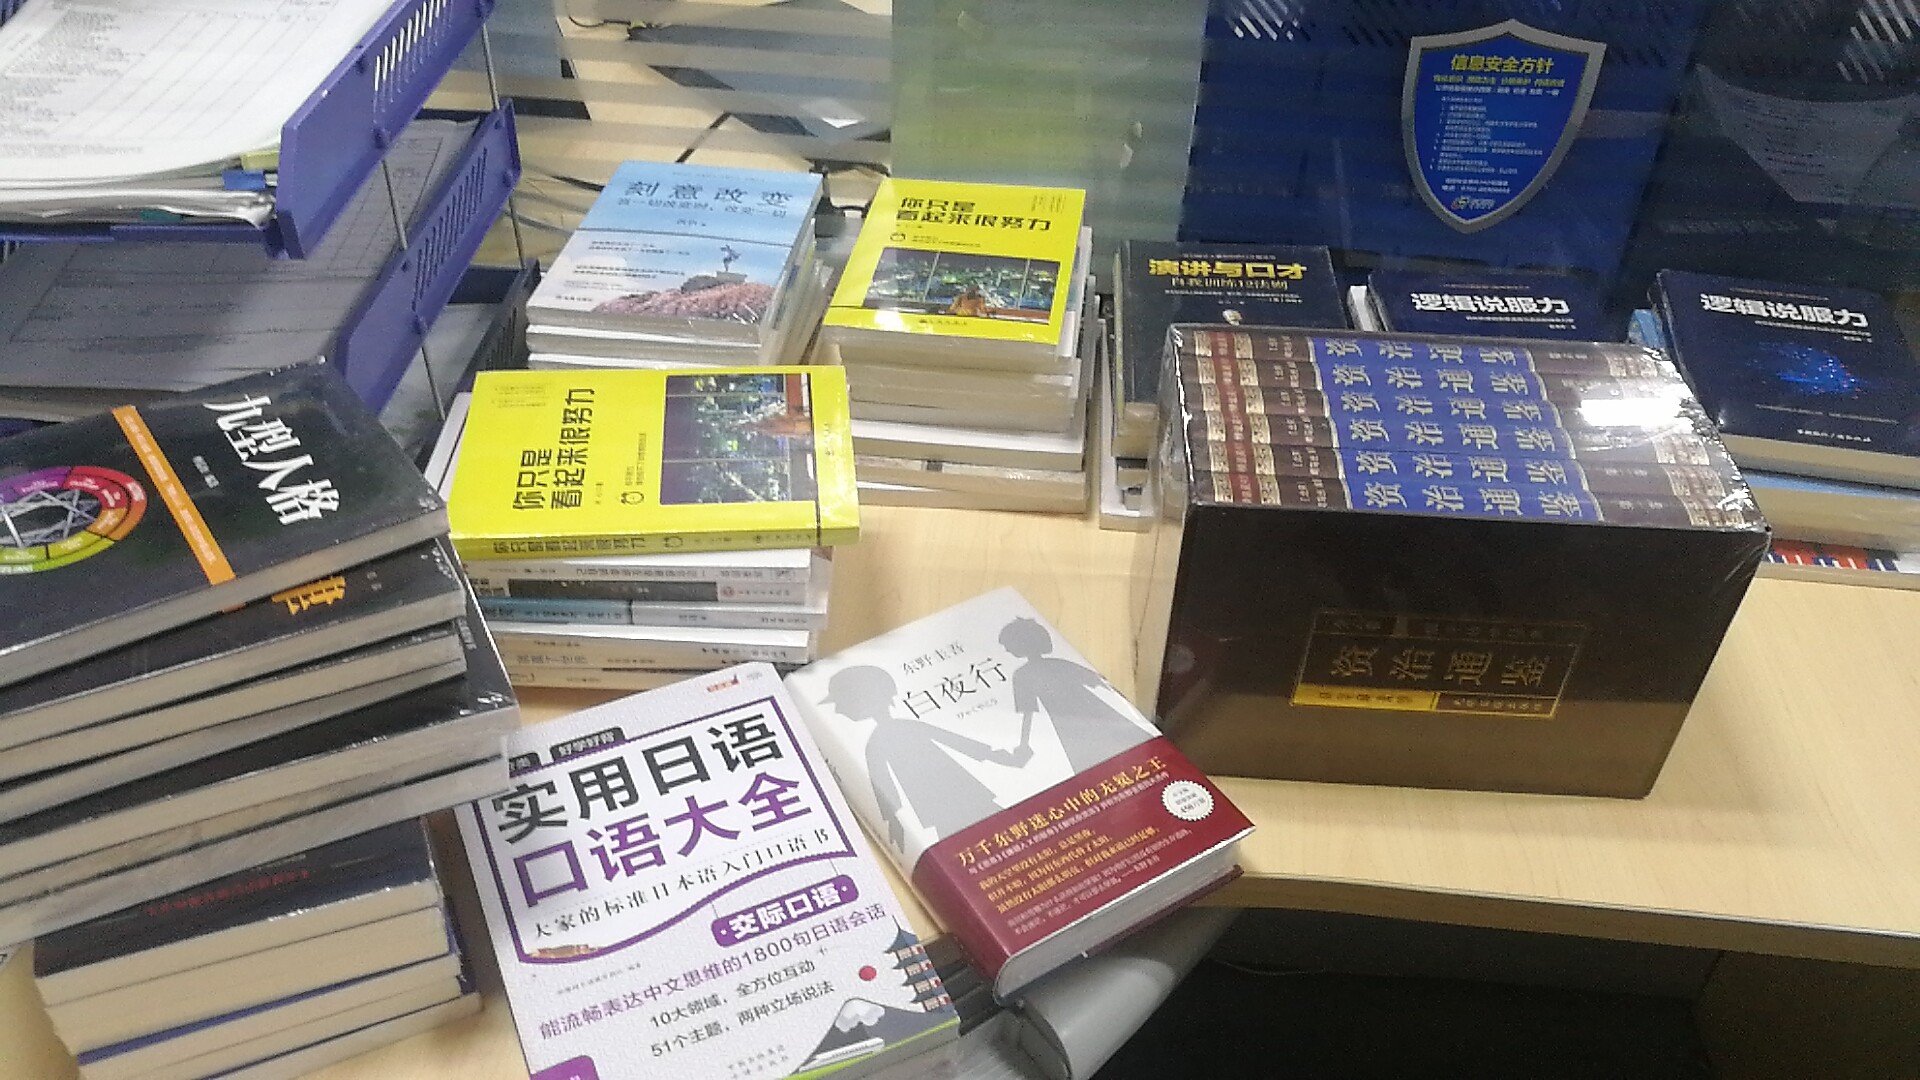 这是一套学习日语的系列书，送给朋友的，希望能够对他有所帮助。